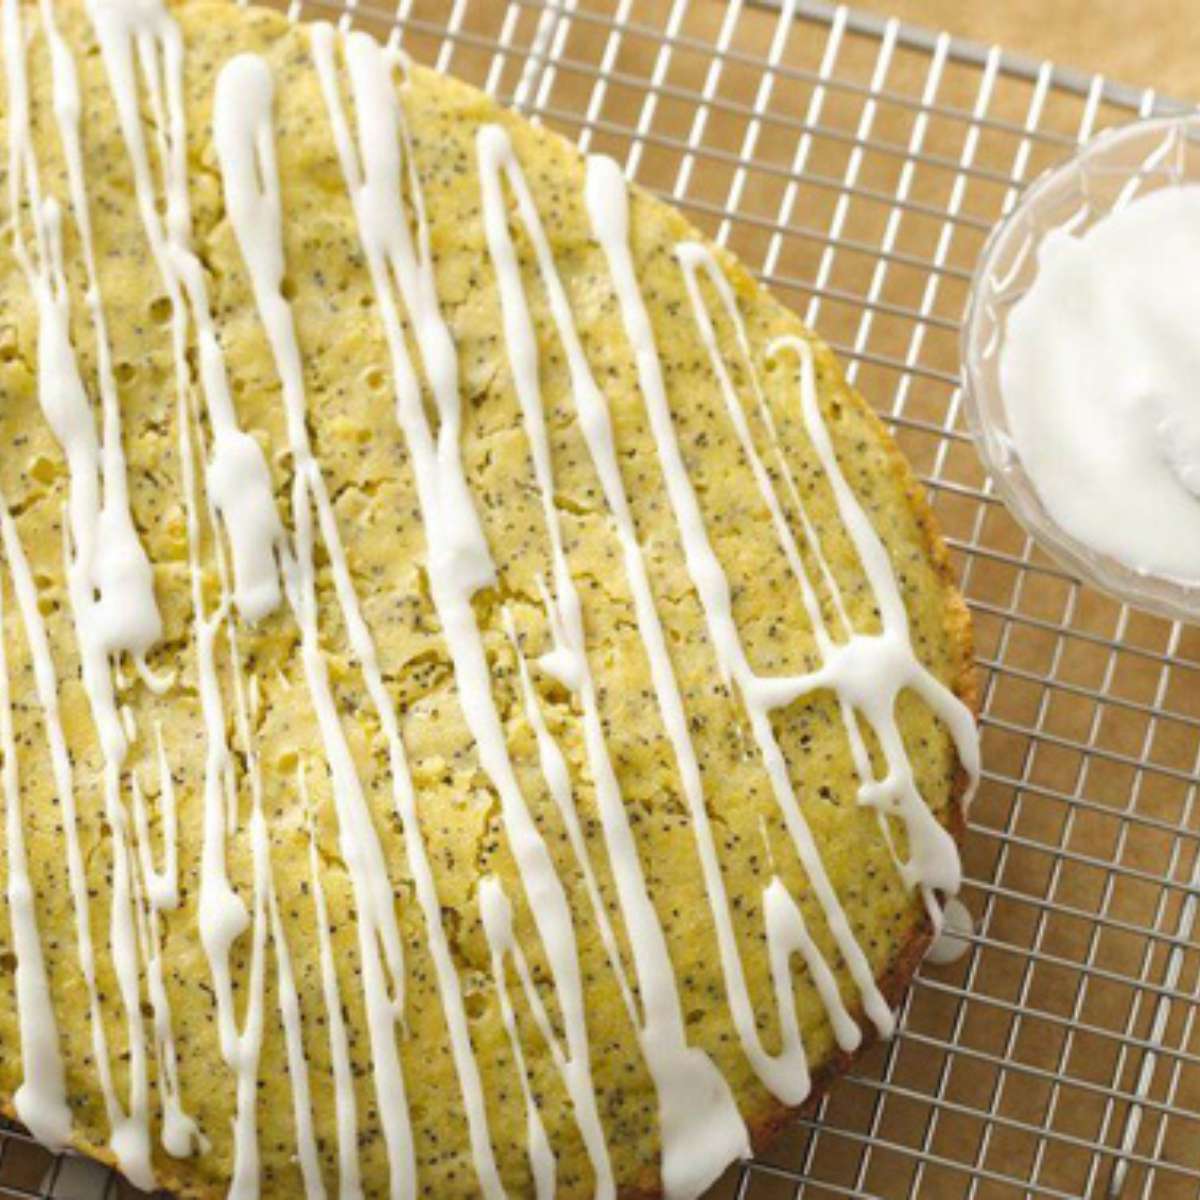 Giant slow cooker lemon poppyseed muffin.